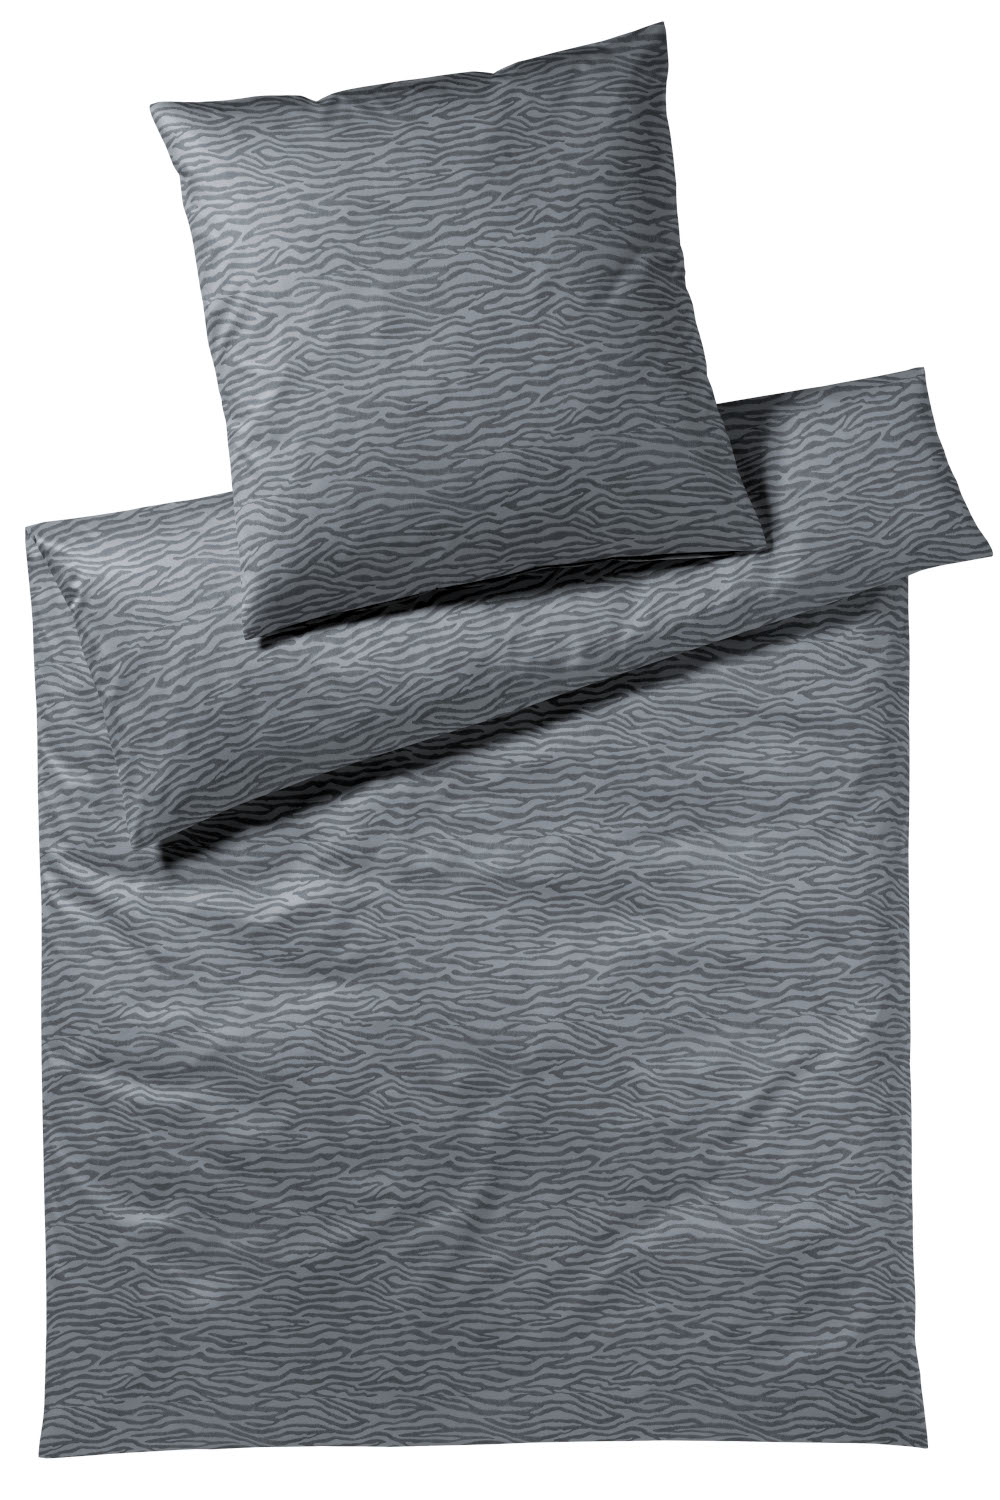 Elegante Comfort Satin Bettwäsche Etosha aus 100% Baumwolle, 135x200 cm 